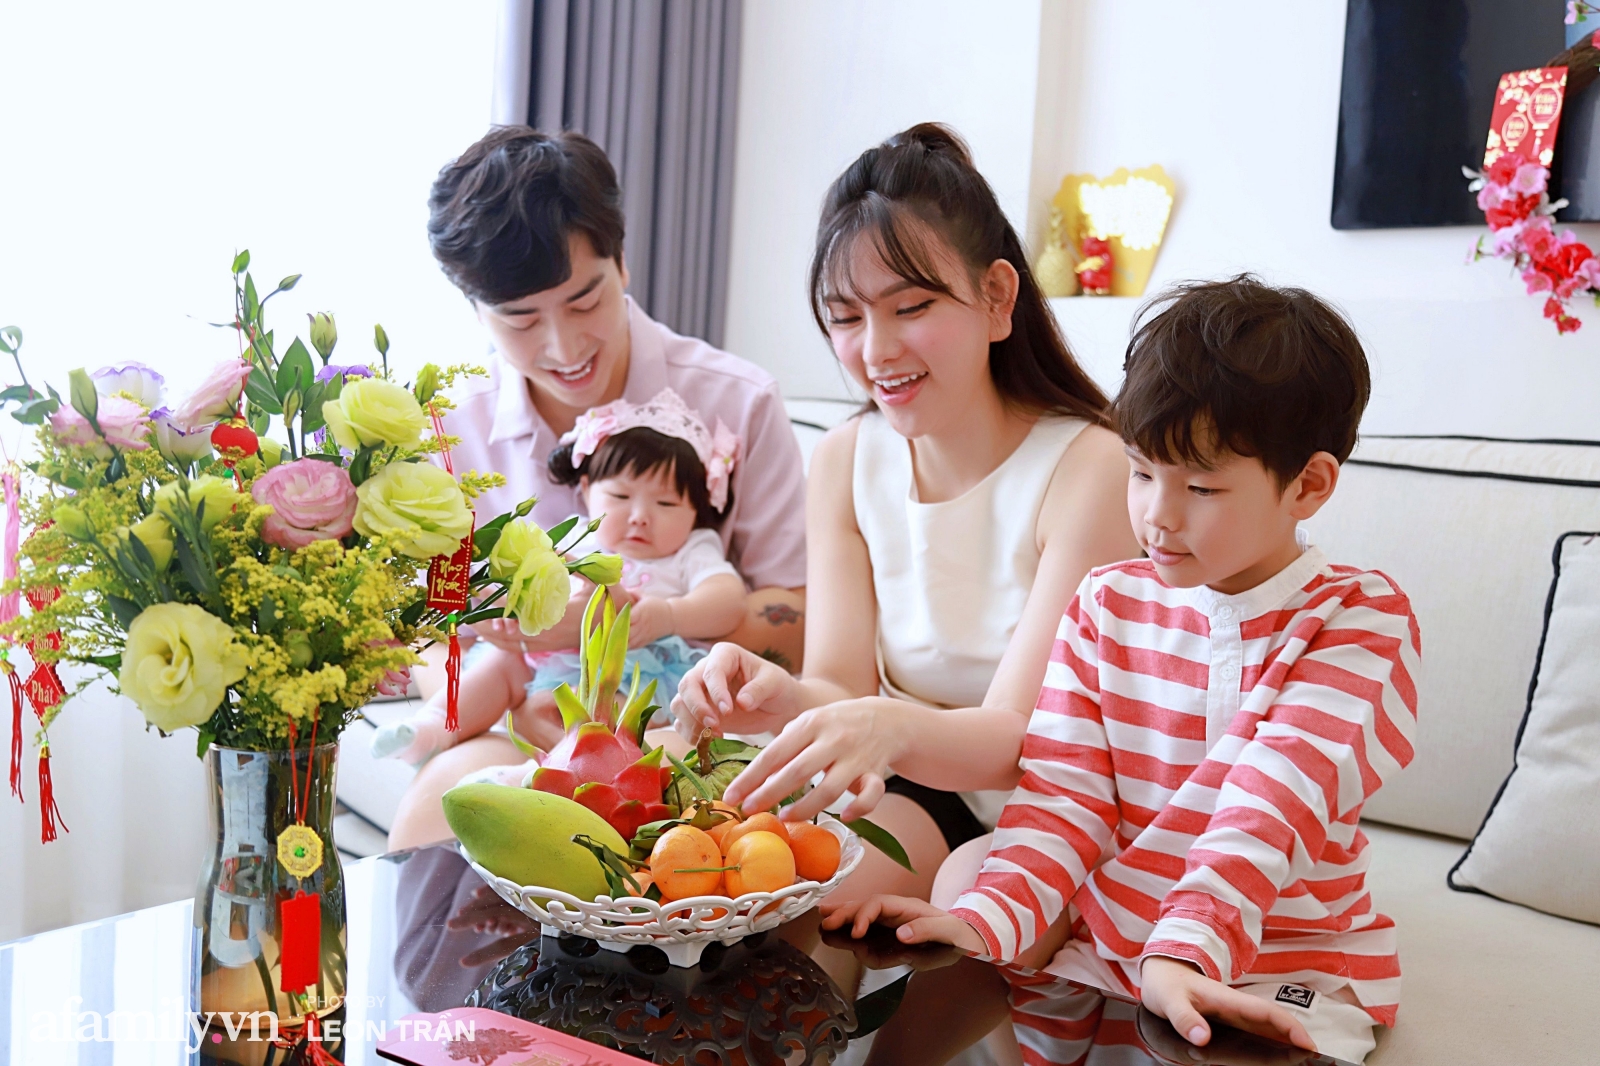 Tết cổ truyền là ngày lễ quan trọng nhất của người Việt Nam. Hãy cùng xem những hình ảnh đầy màu sắc, niềm vui, niềm hạnh phúc khi được quây quần bên gia đình trong những ngày đầu năm âm lịch. Chắc chắn bạn sẽ cảm thấy ấm lòng và được thăng hoa tinh thần khi xem hình ảnh liên quan đến Tết cổ truyền.